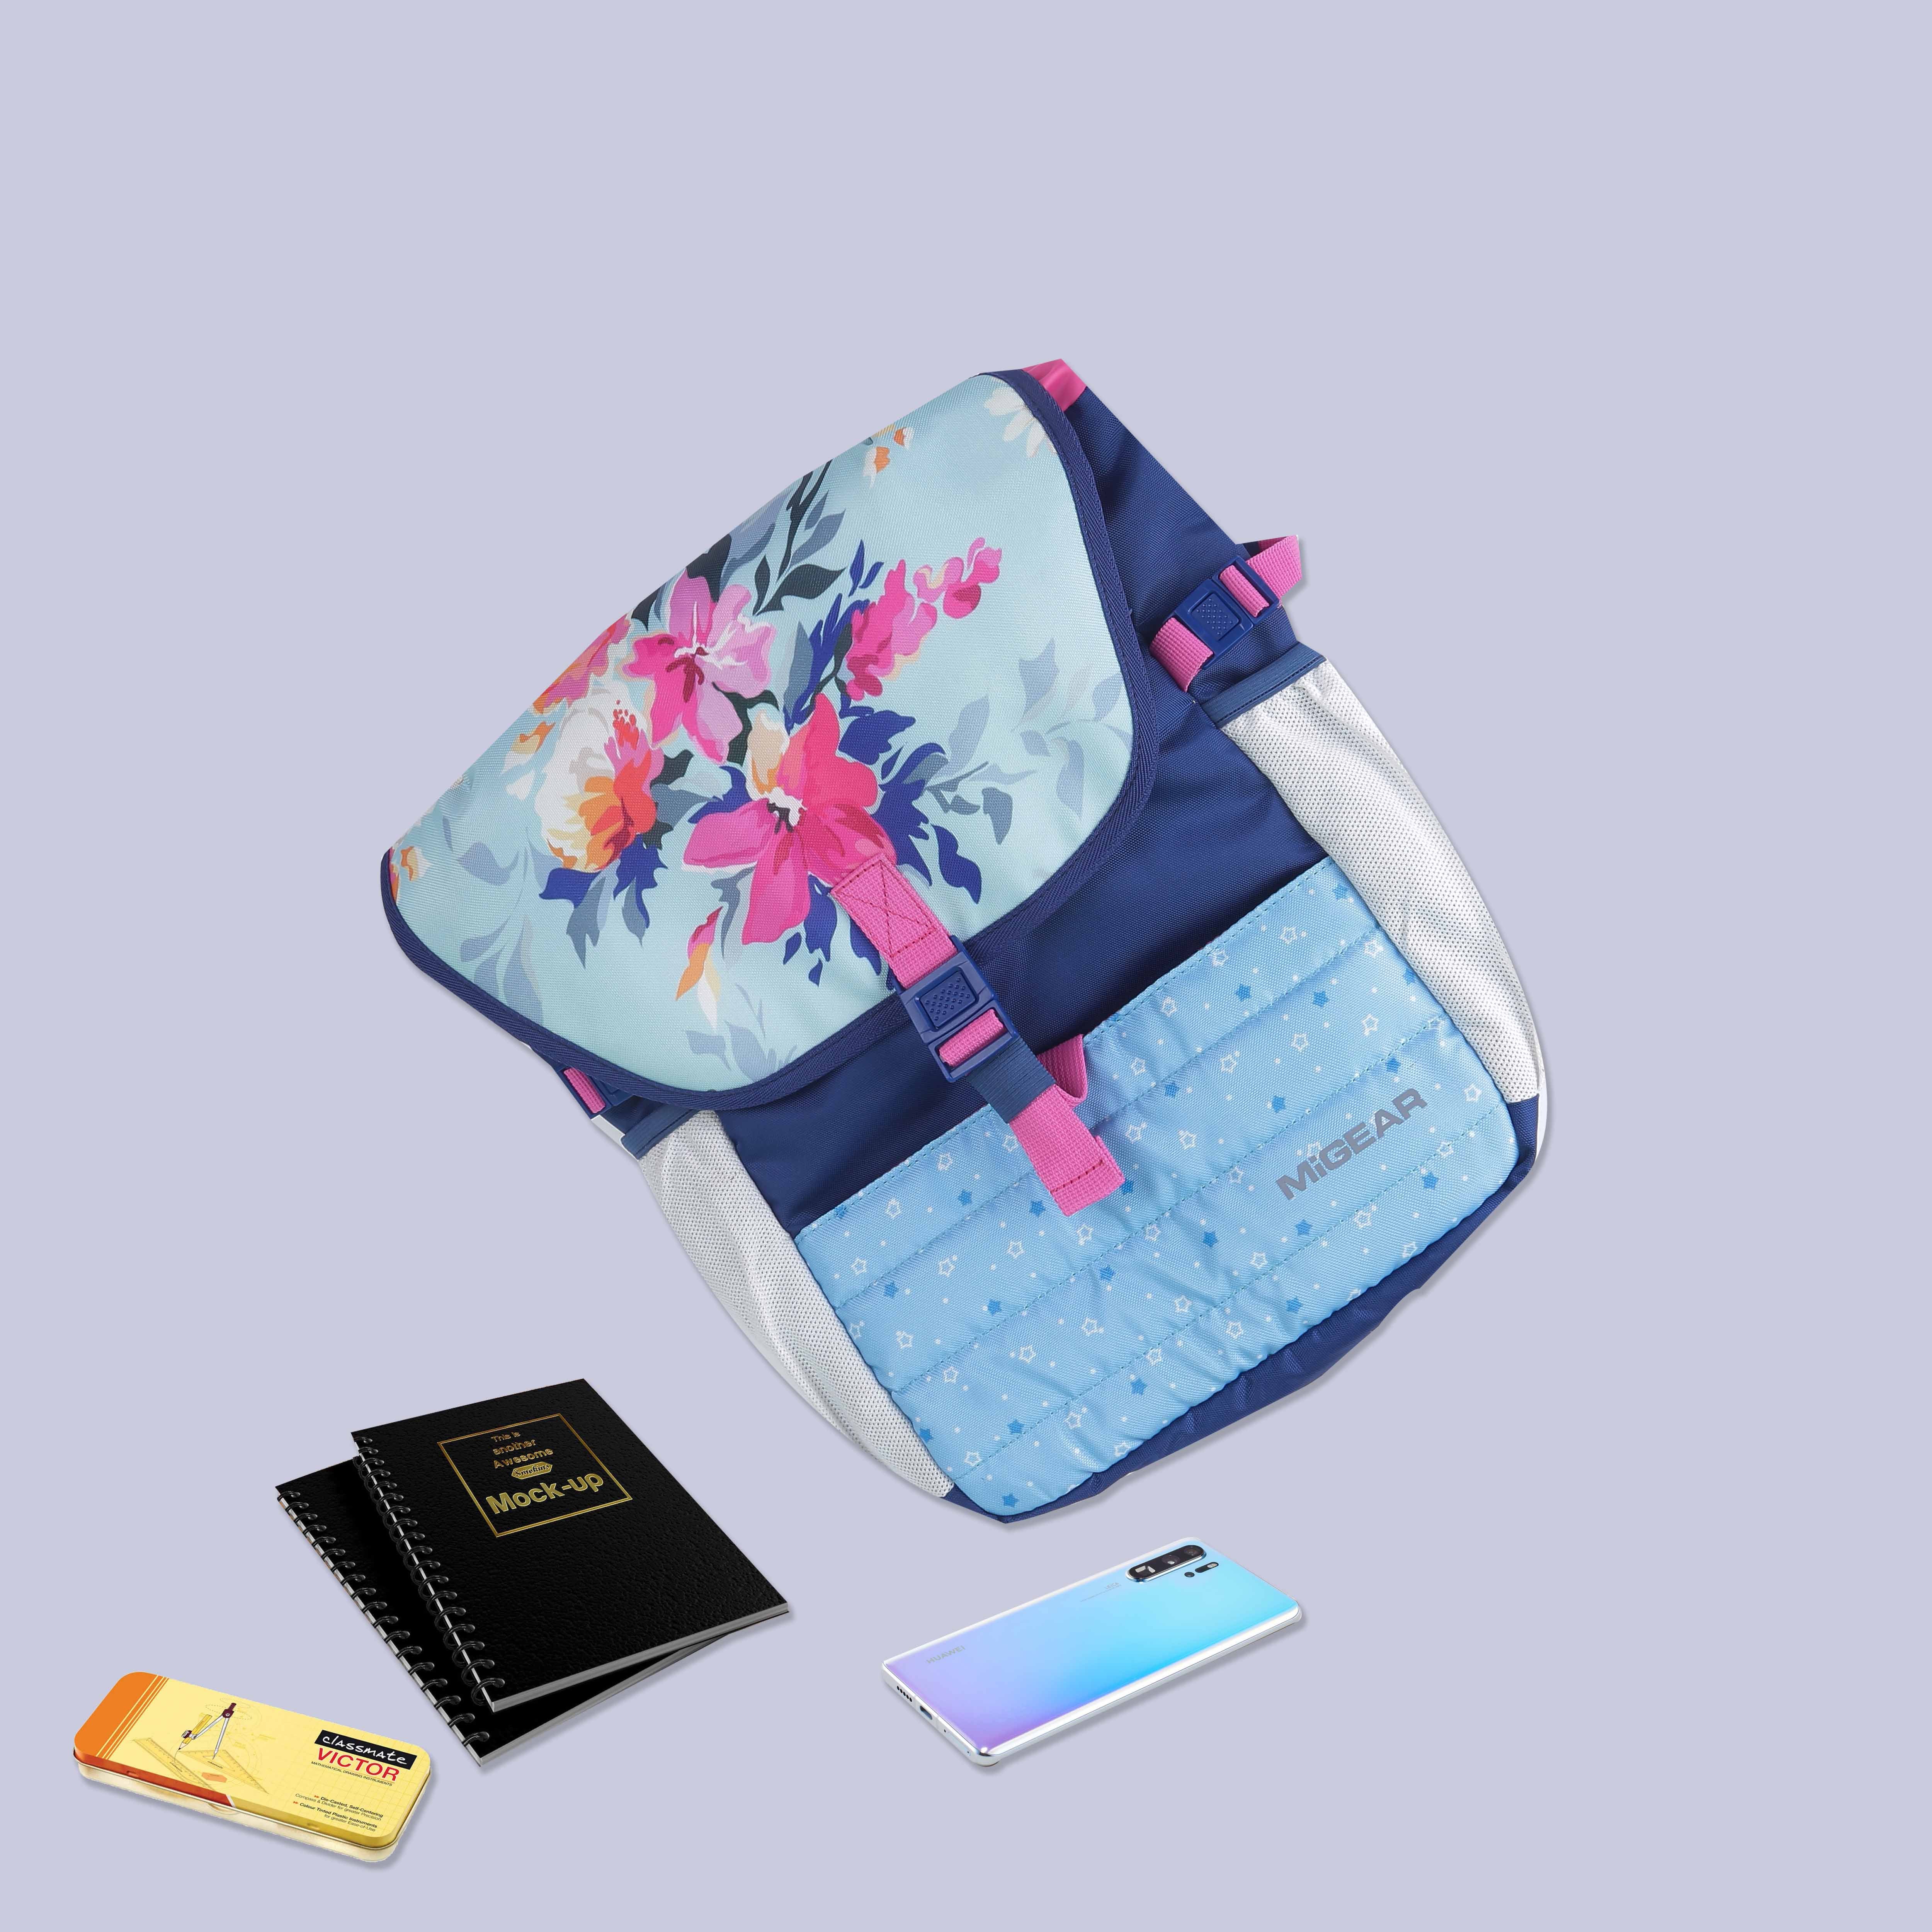 QuiltedComforter Backpack